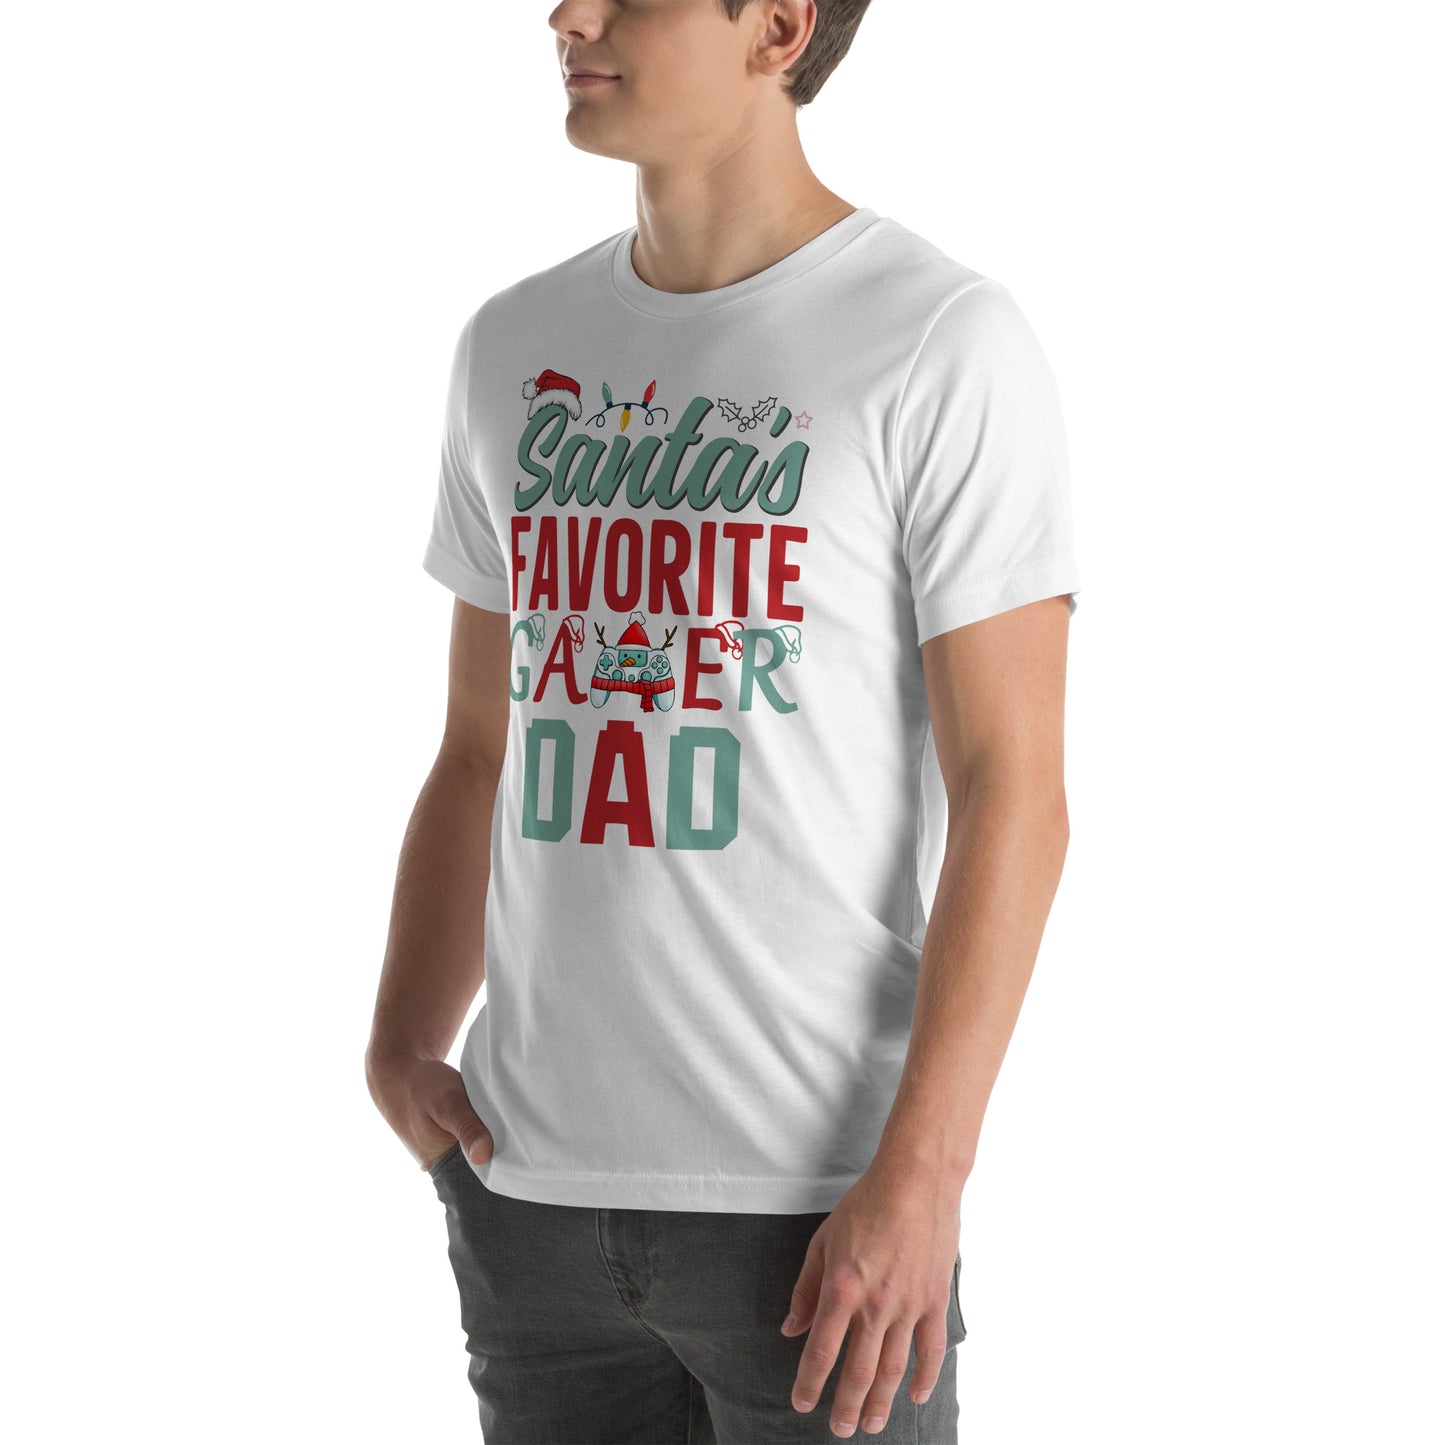 Santa's Favorite Gamer Dad | Unisex Tee | Gamer Dad Shirt